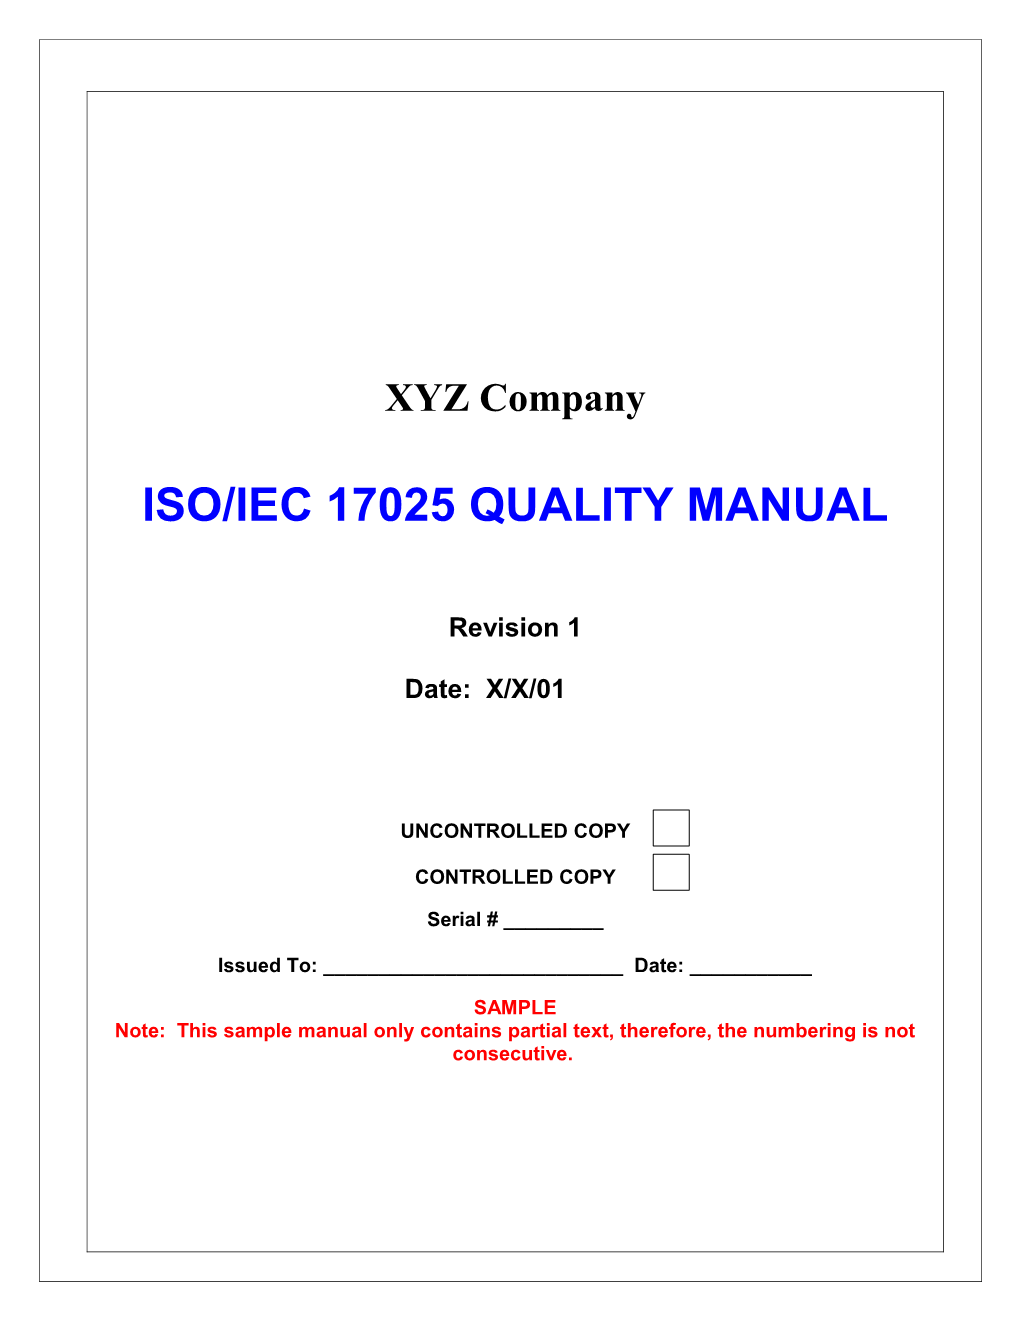 Gaging.Com & QSI's ISO 17025 Sample Manual